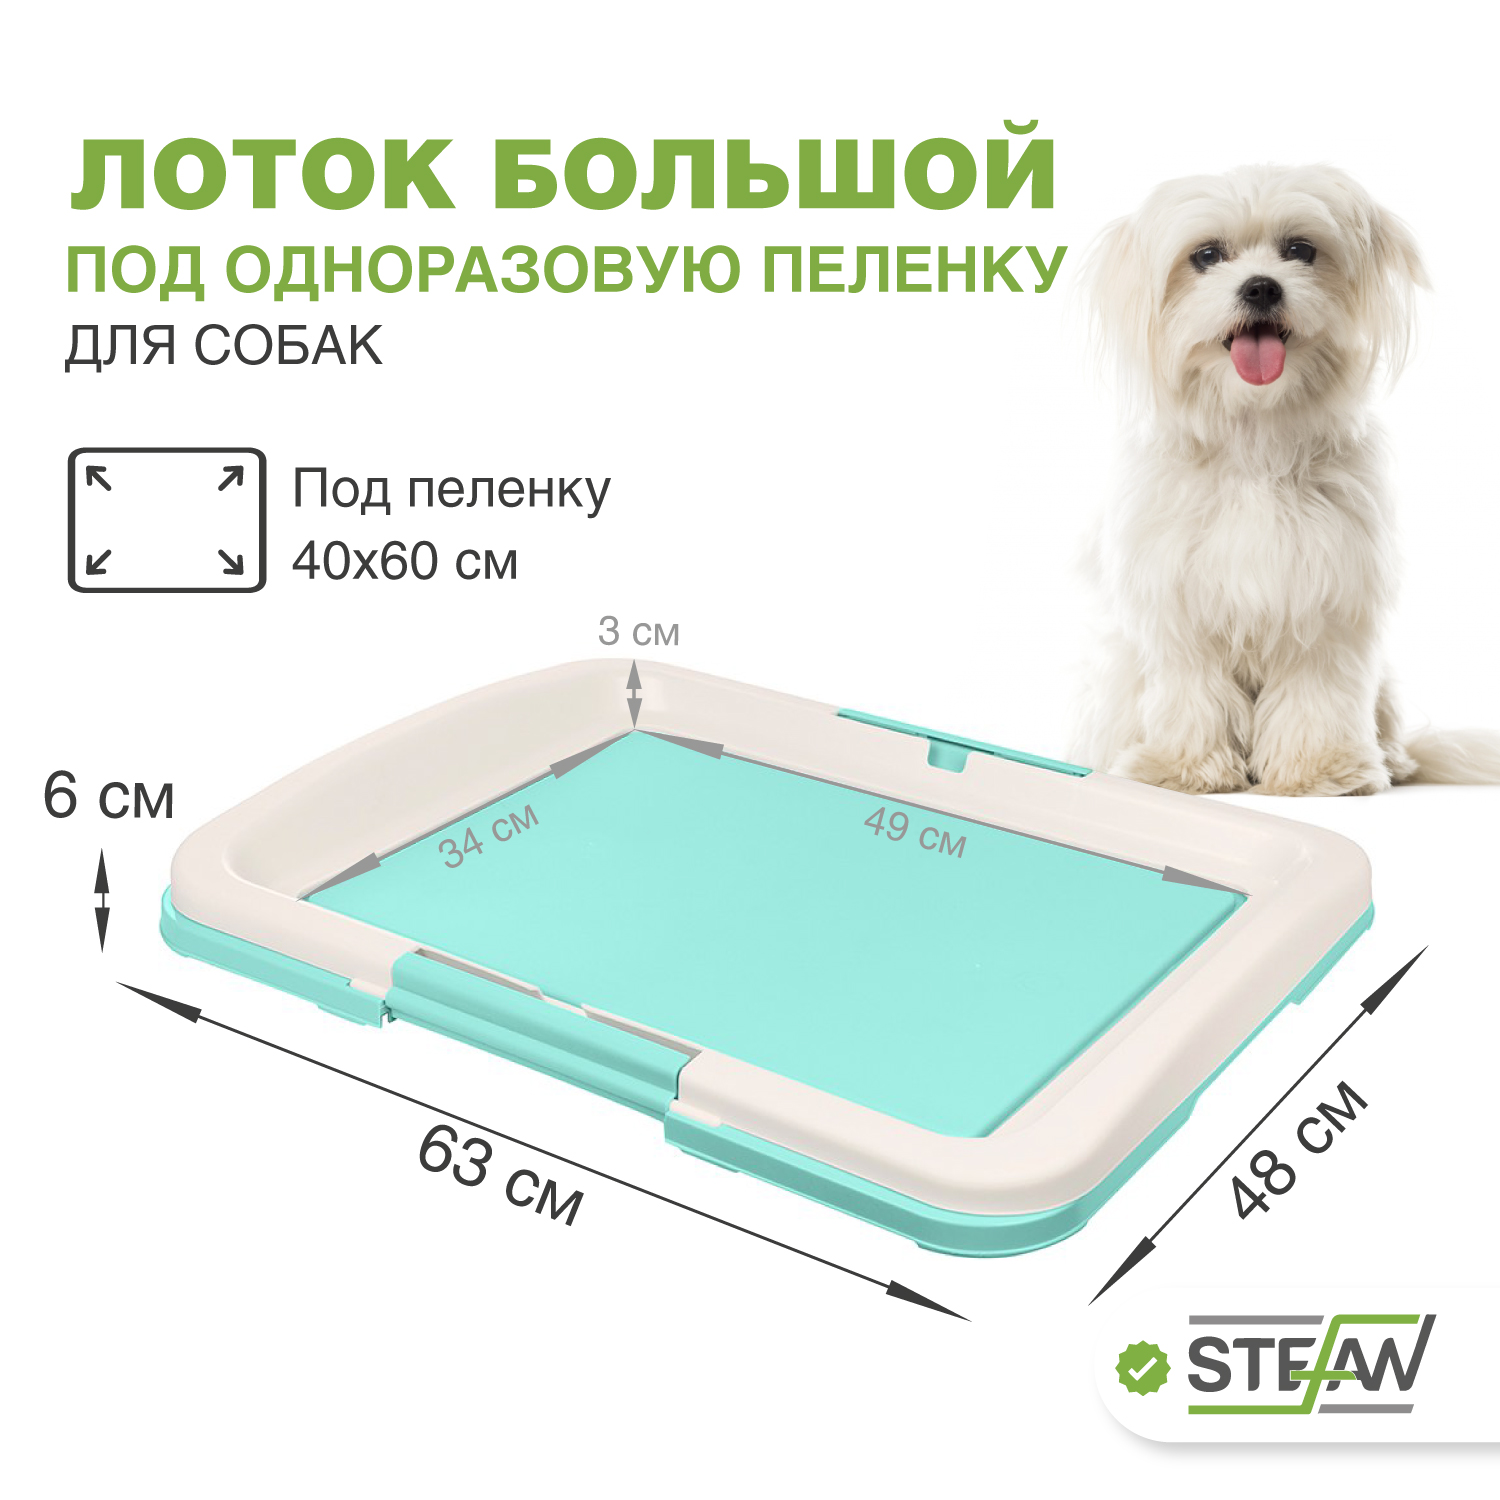 Туалет для собак STEFAN  под одноразовую пеленку большой L размер 63x49 BP1032, бирюзовый